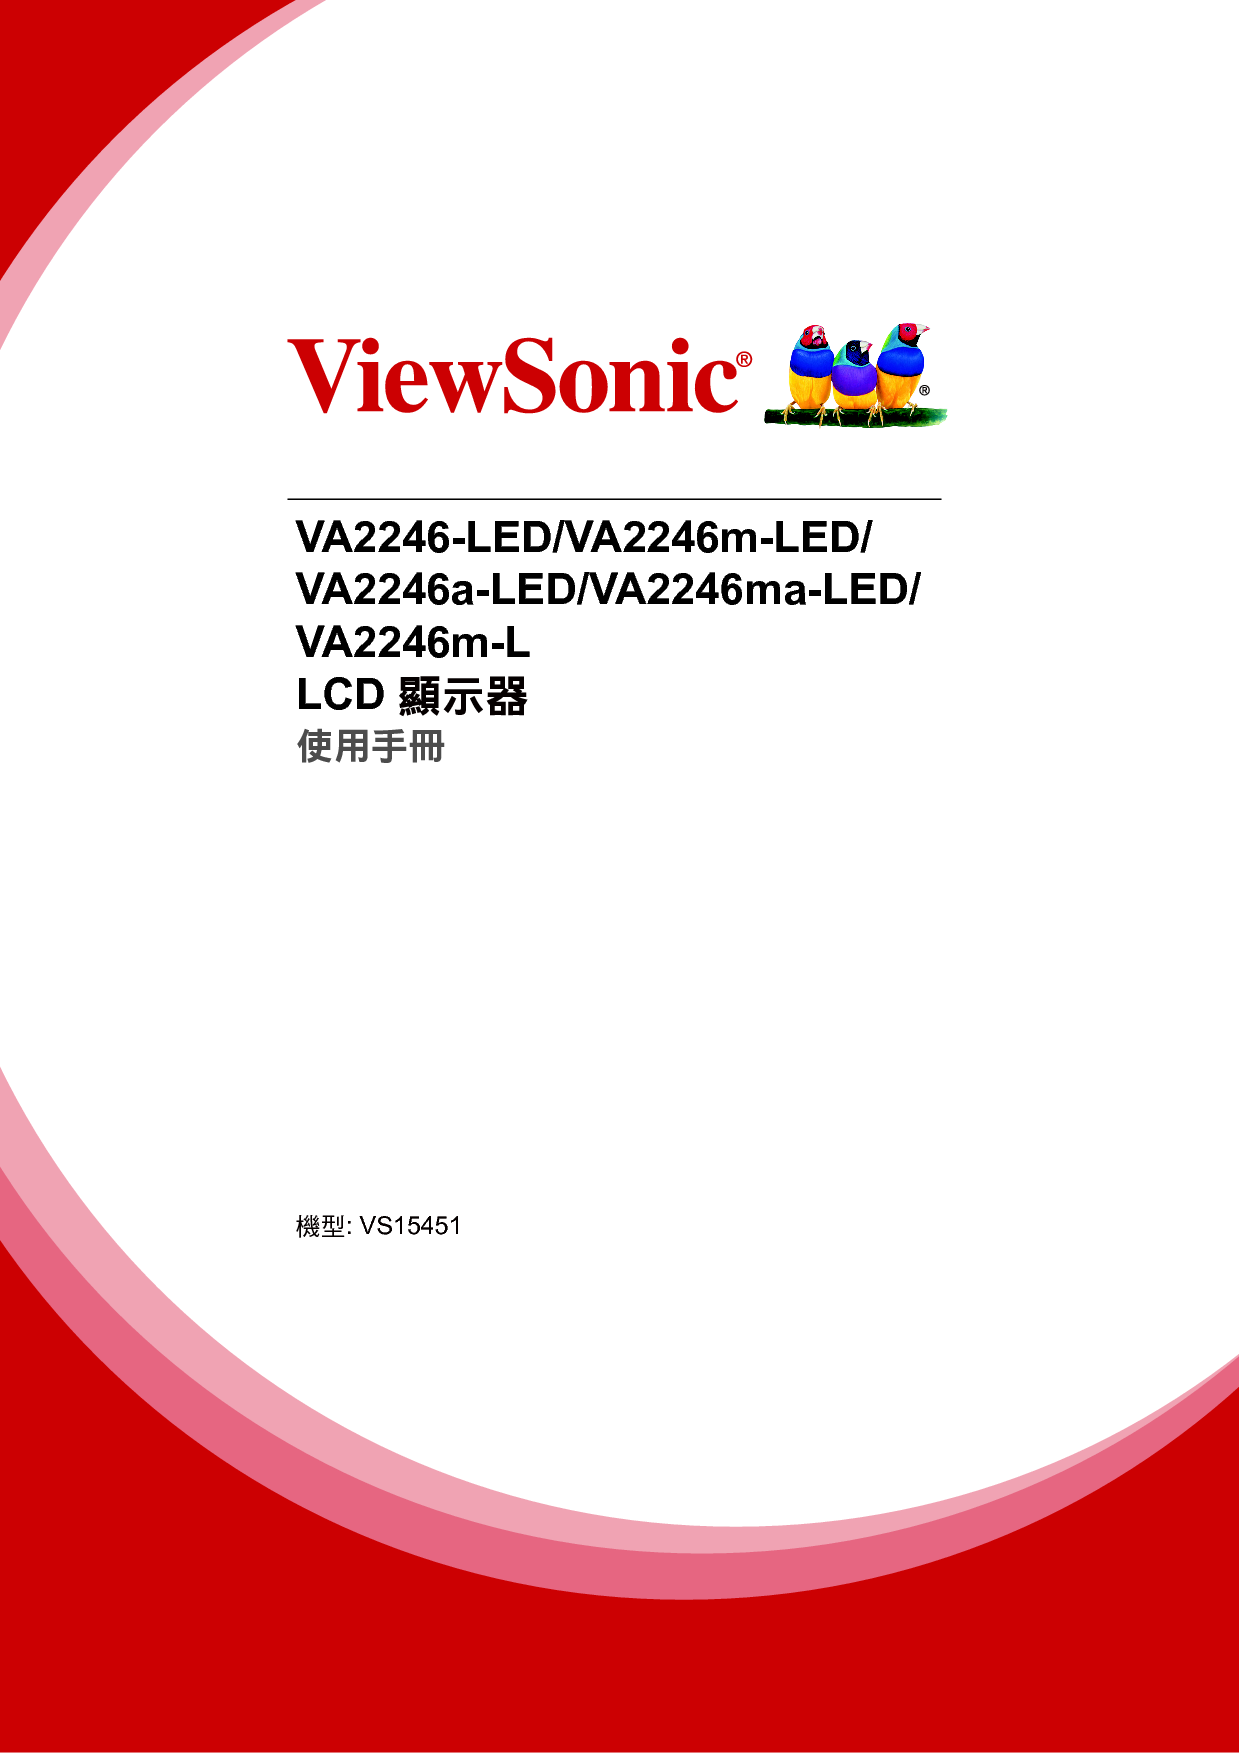 优派 ViewSonic VA2246-LED 繁体 使用手册 封面